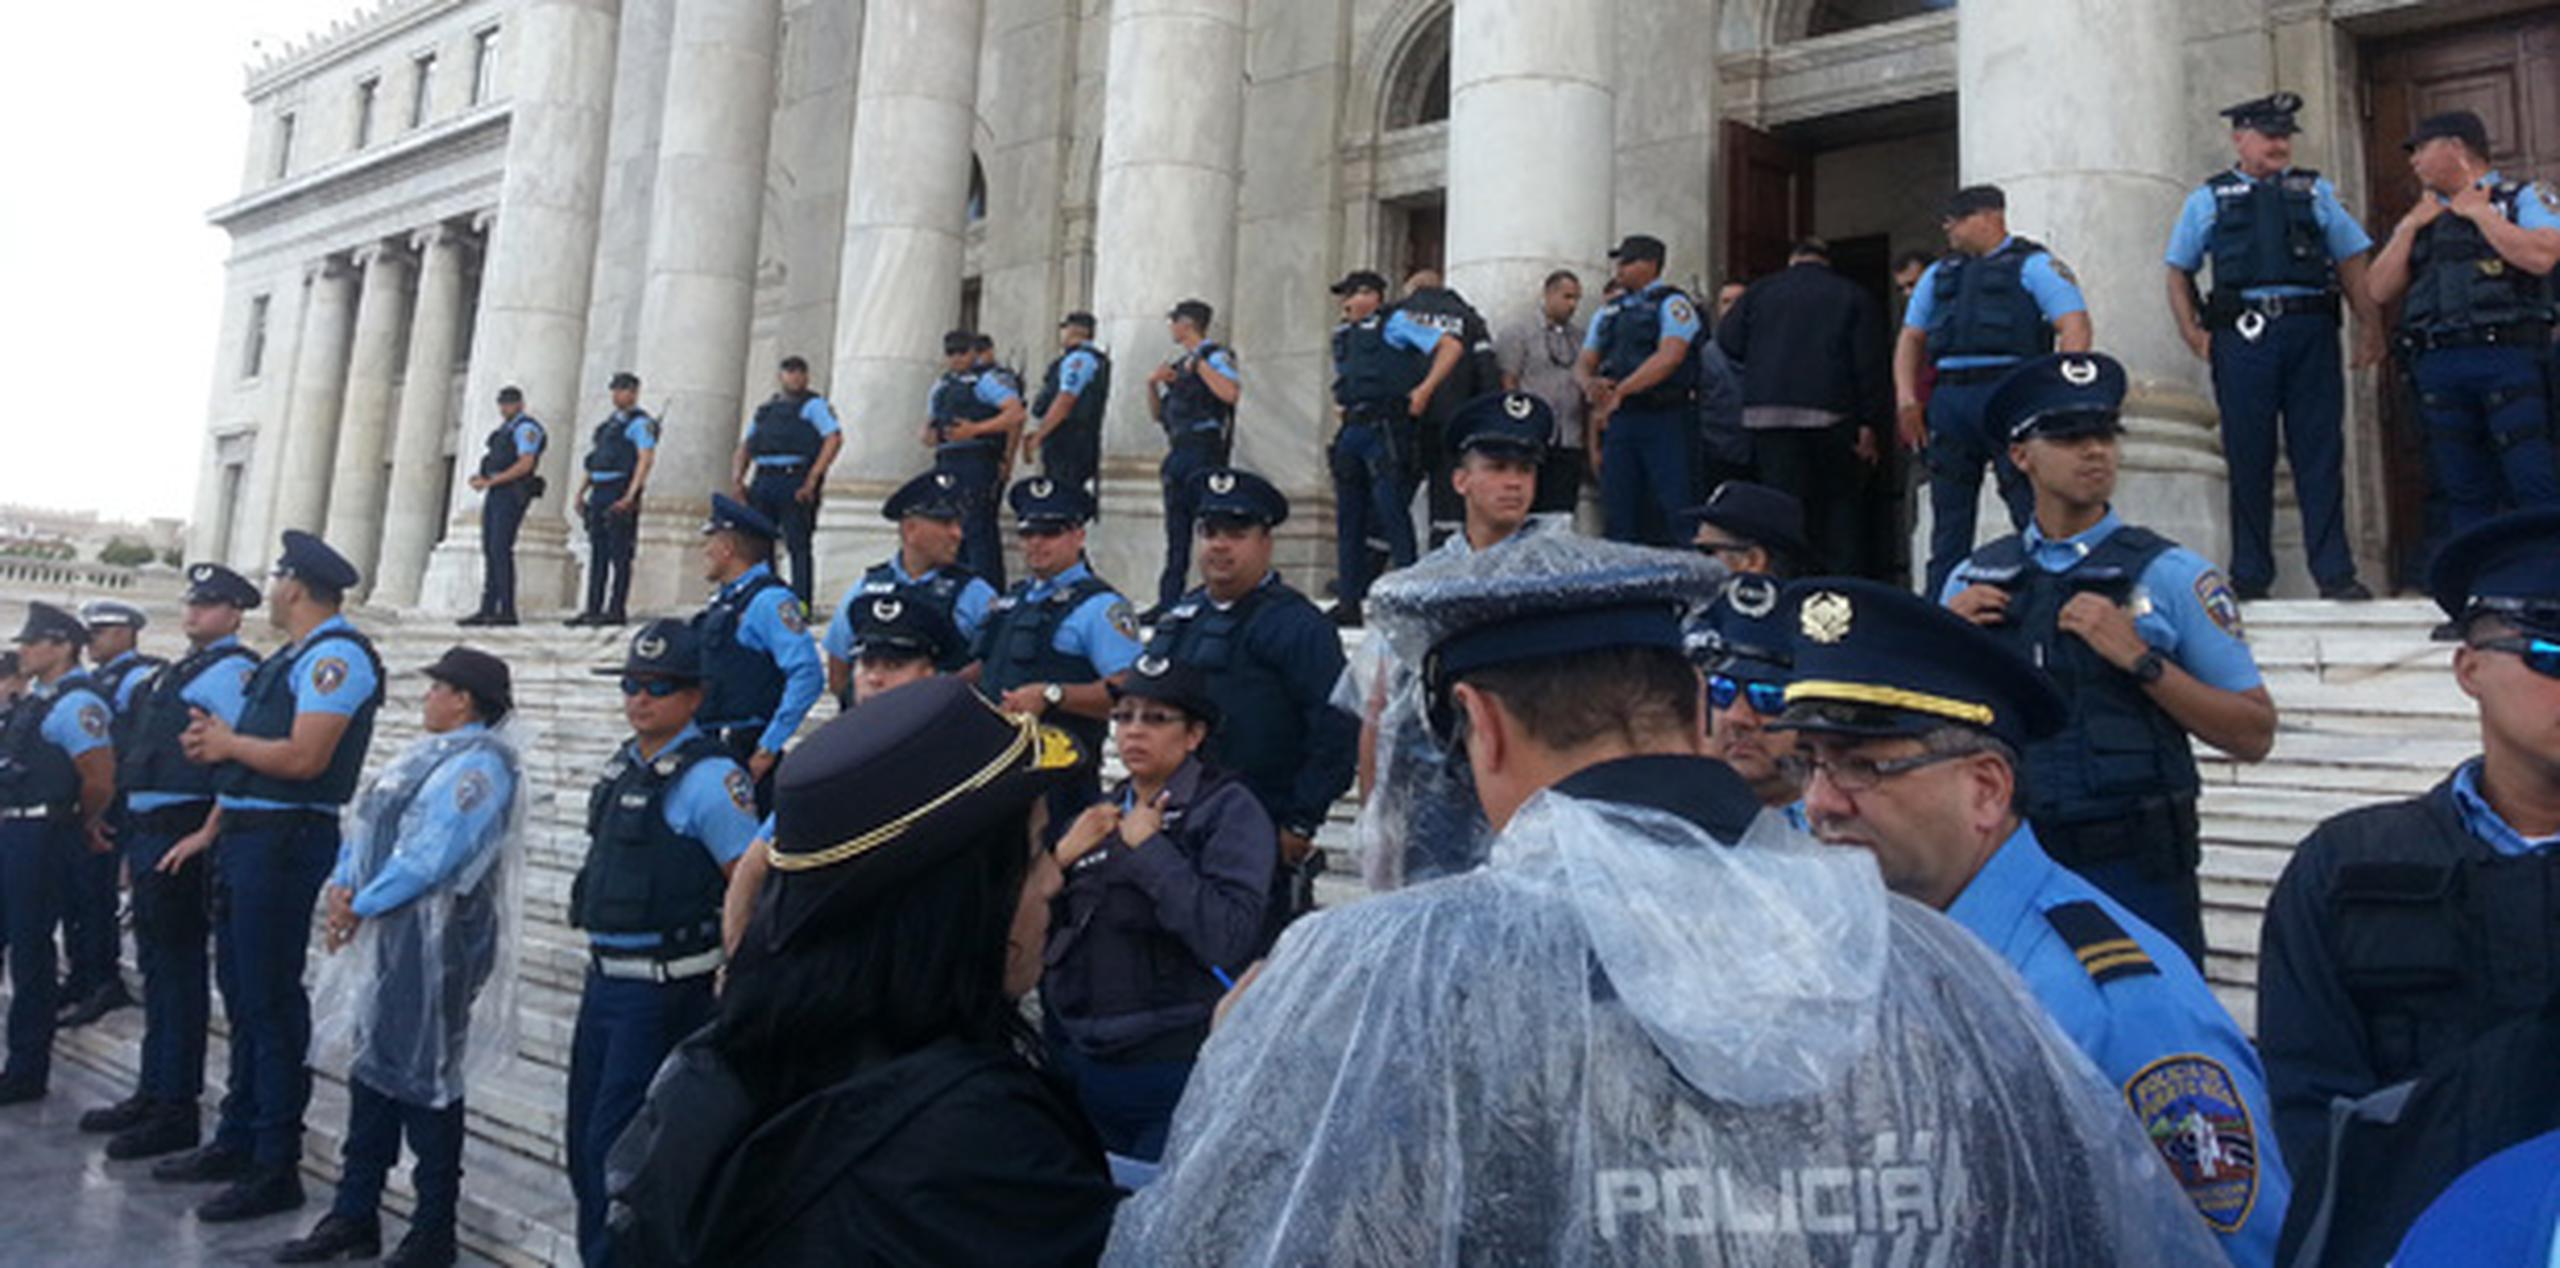 En el Capitolio la vigilancia policiaca hoy era sumamente estricta, con la presencia de más de 100 policías dentro de la Casa de las Leyes. (jose.madera@gfrmedia.com)